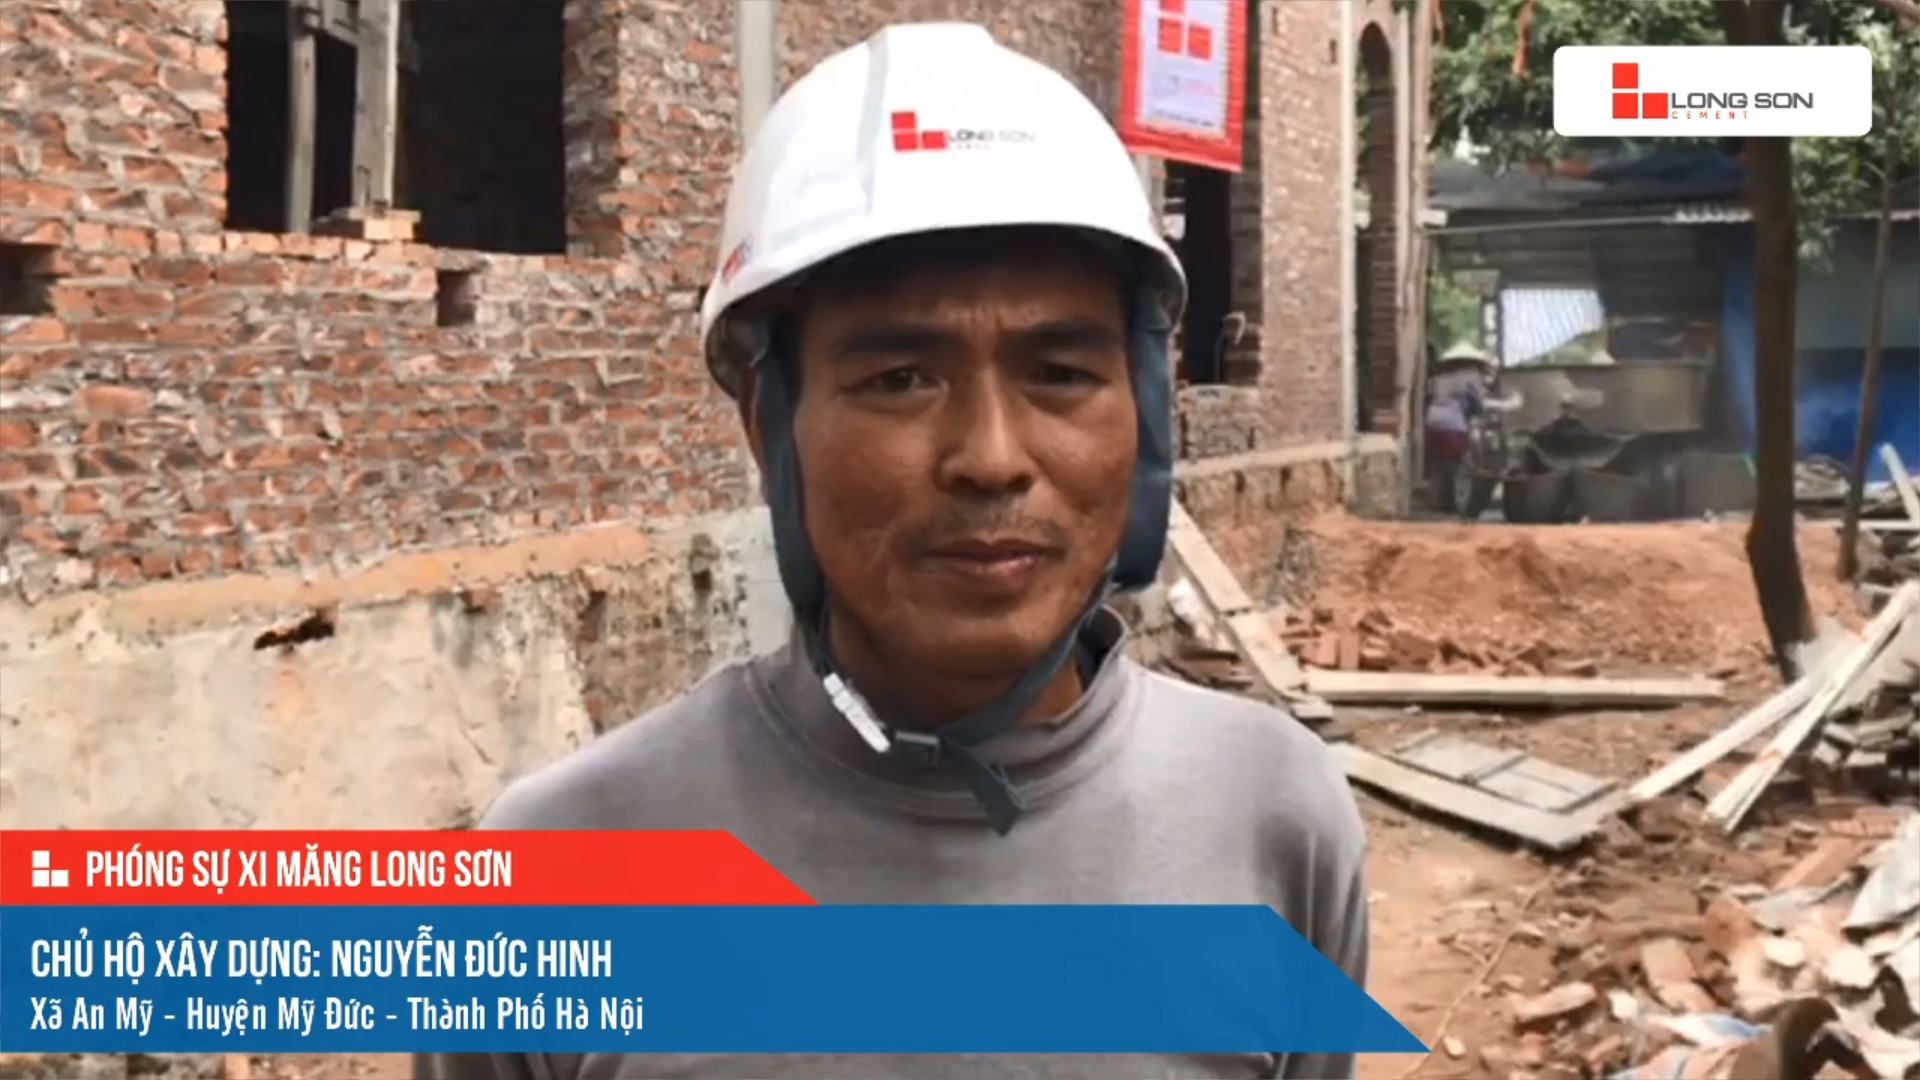 Phóng sự công trình sử dụng xi măng Long Sơn tại Hà Nội ngày 14/11/2021